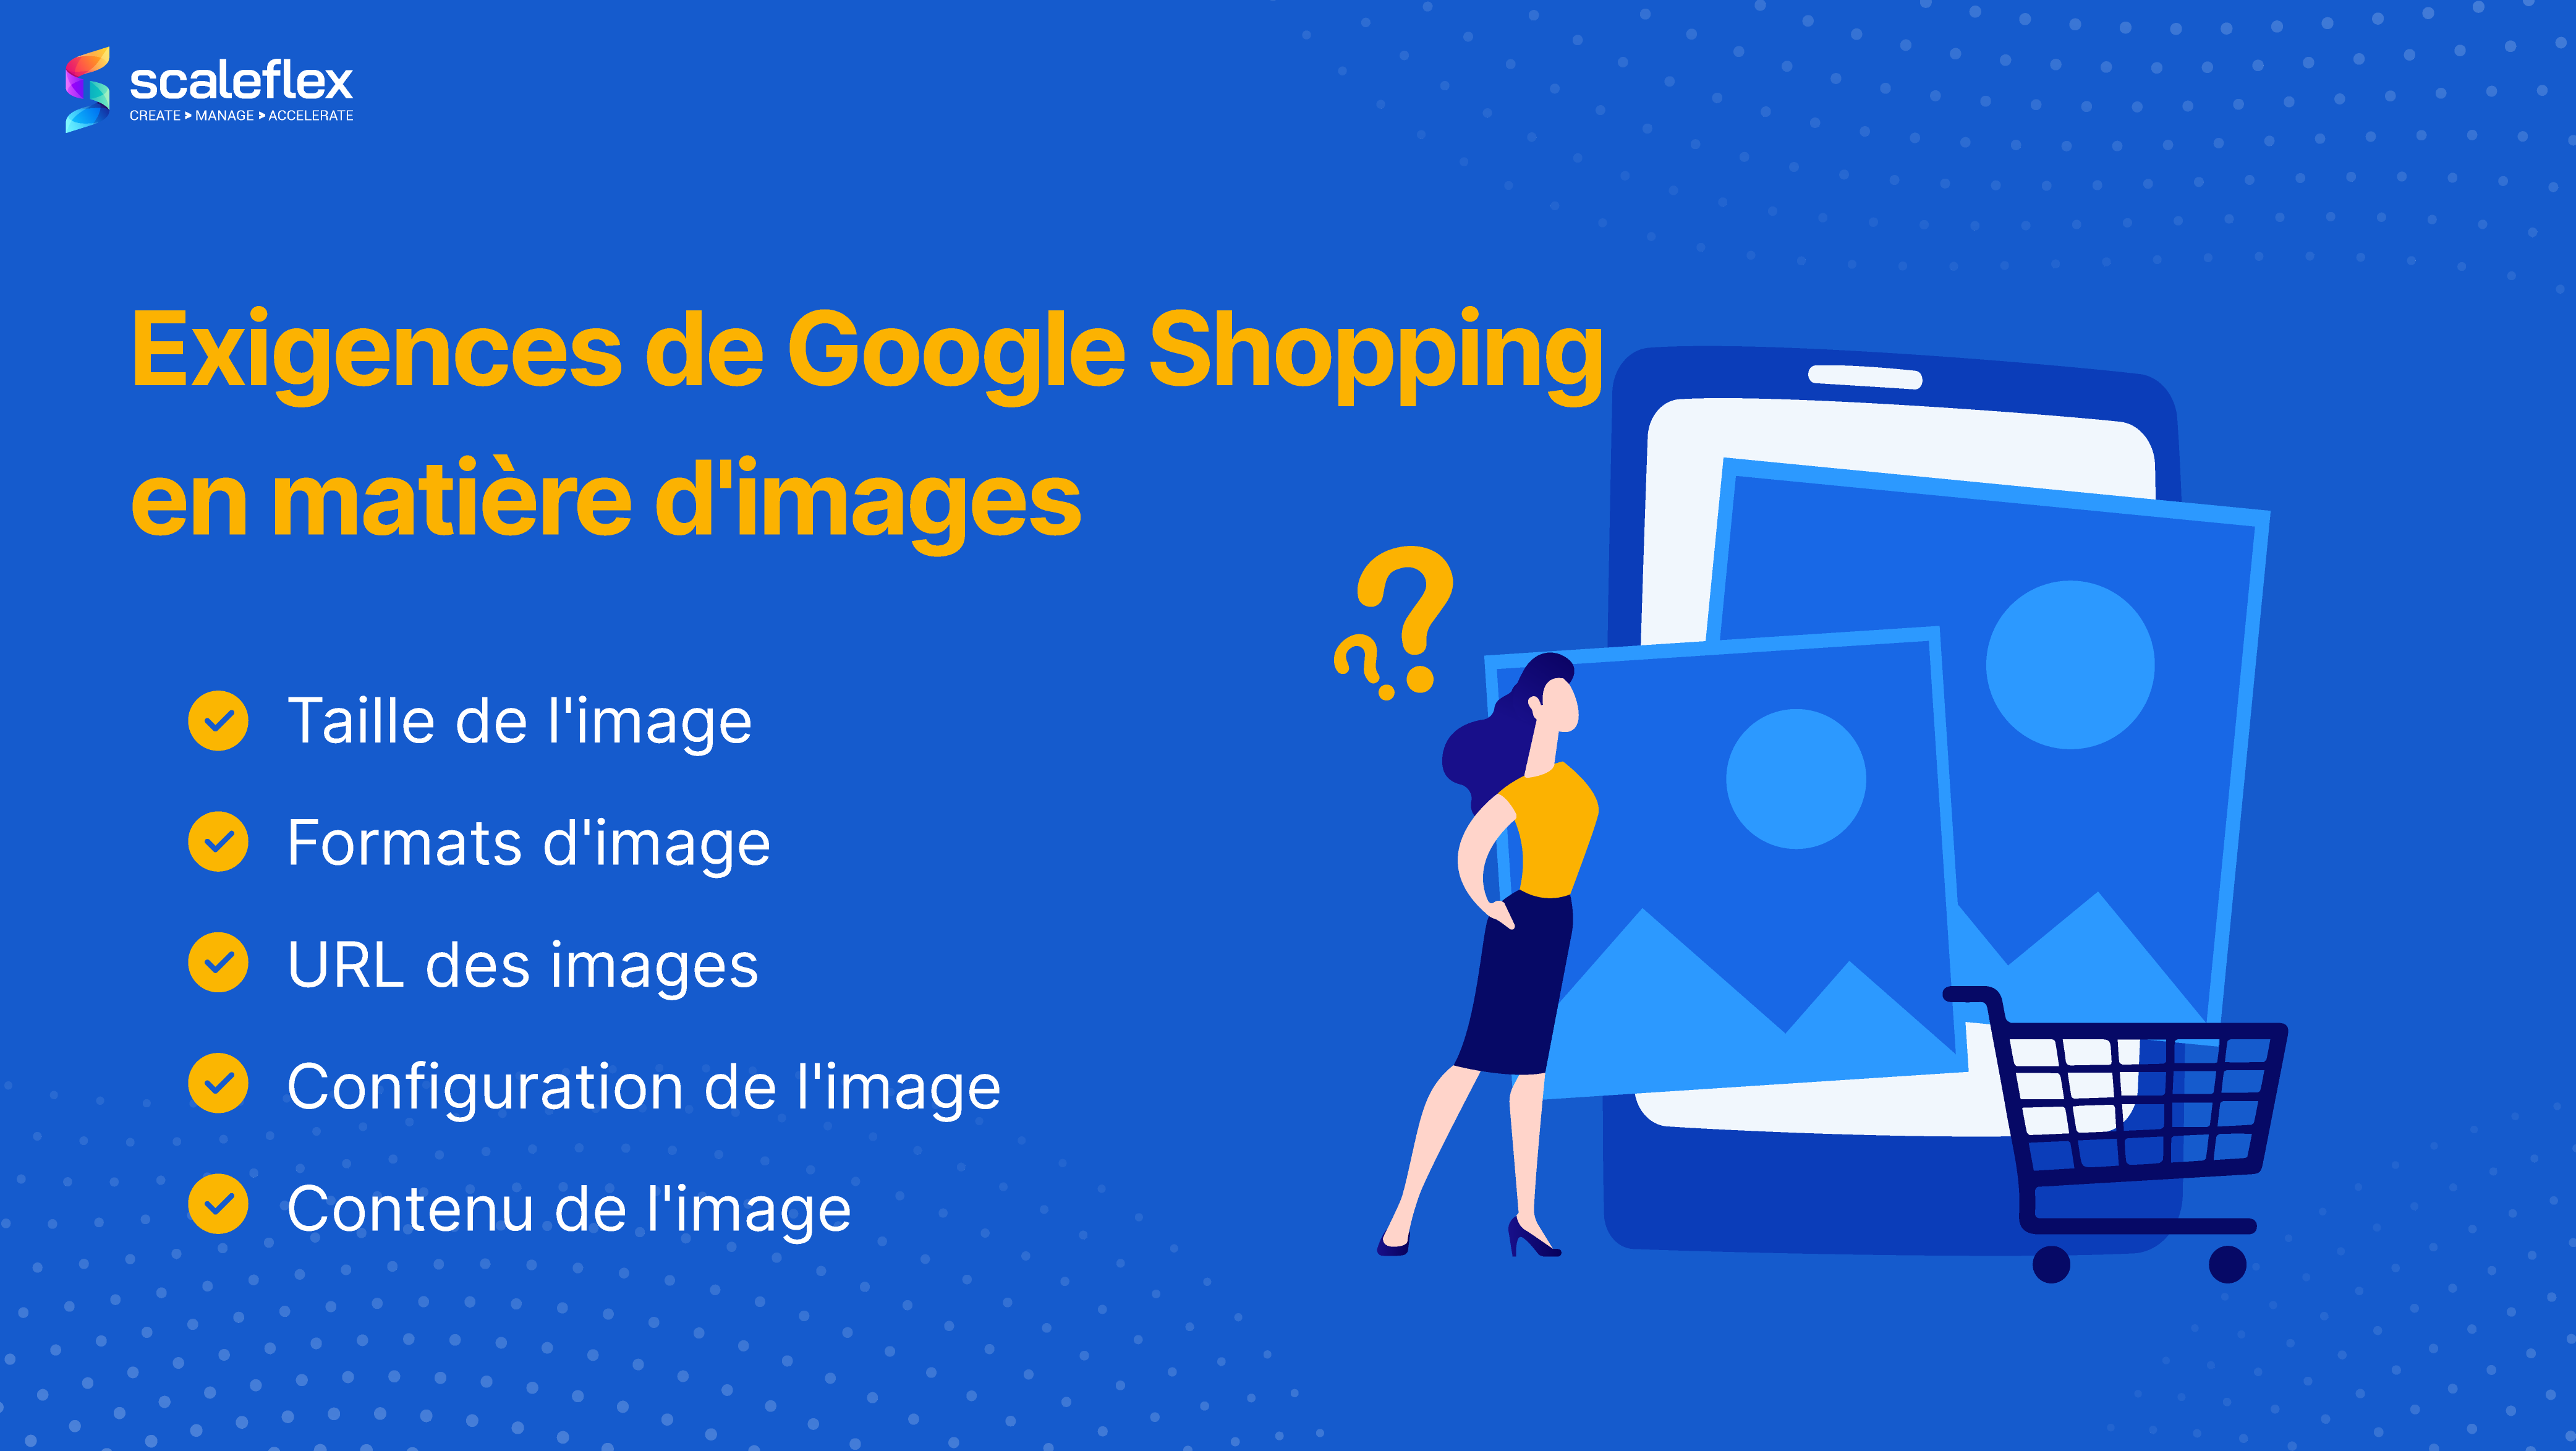 Exigences de Google Shopping en matière d'images